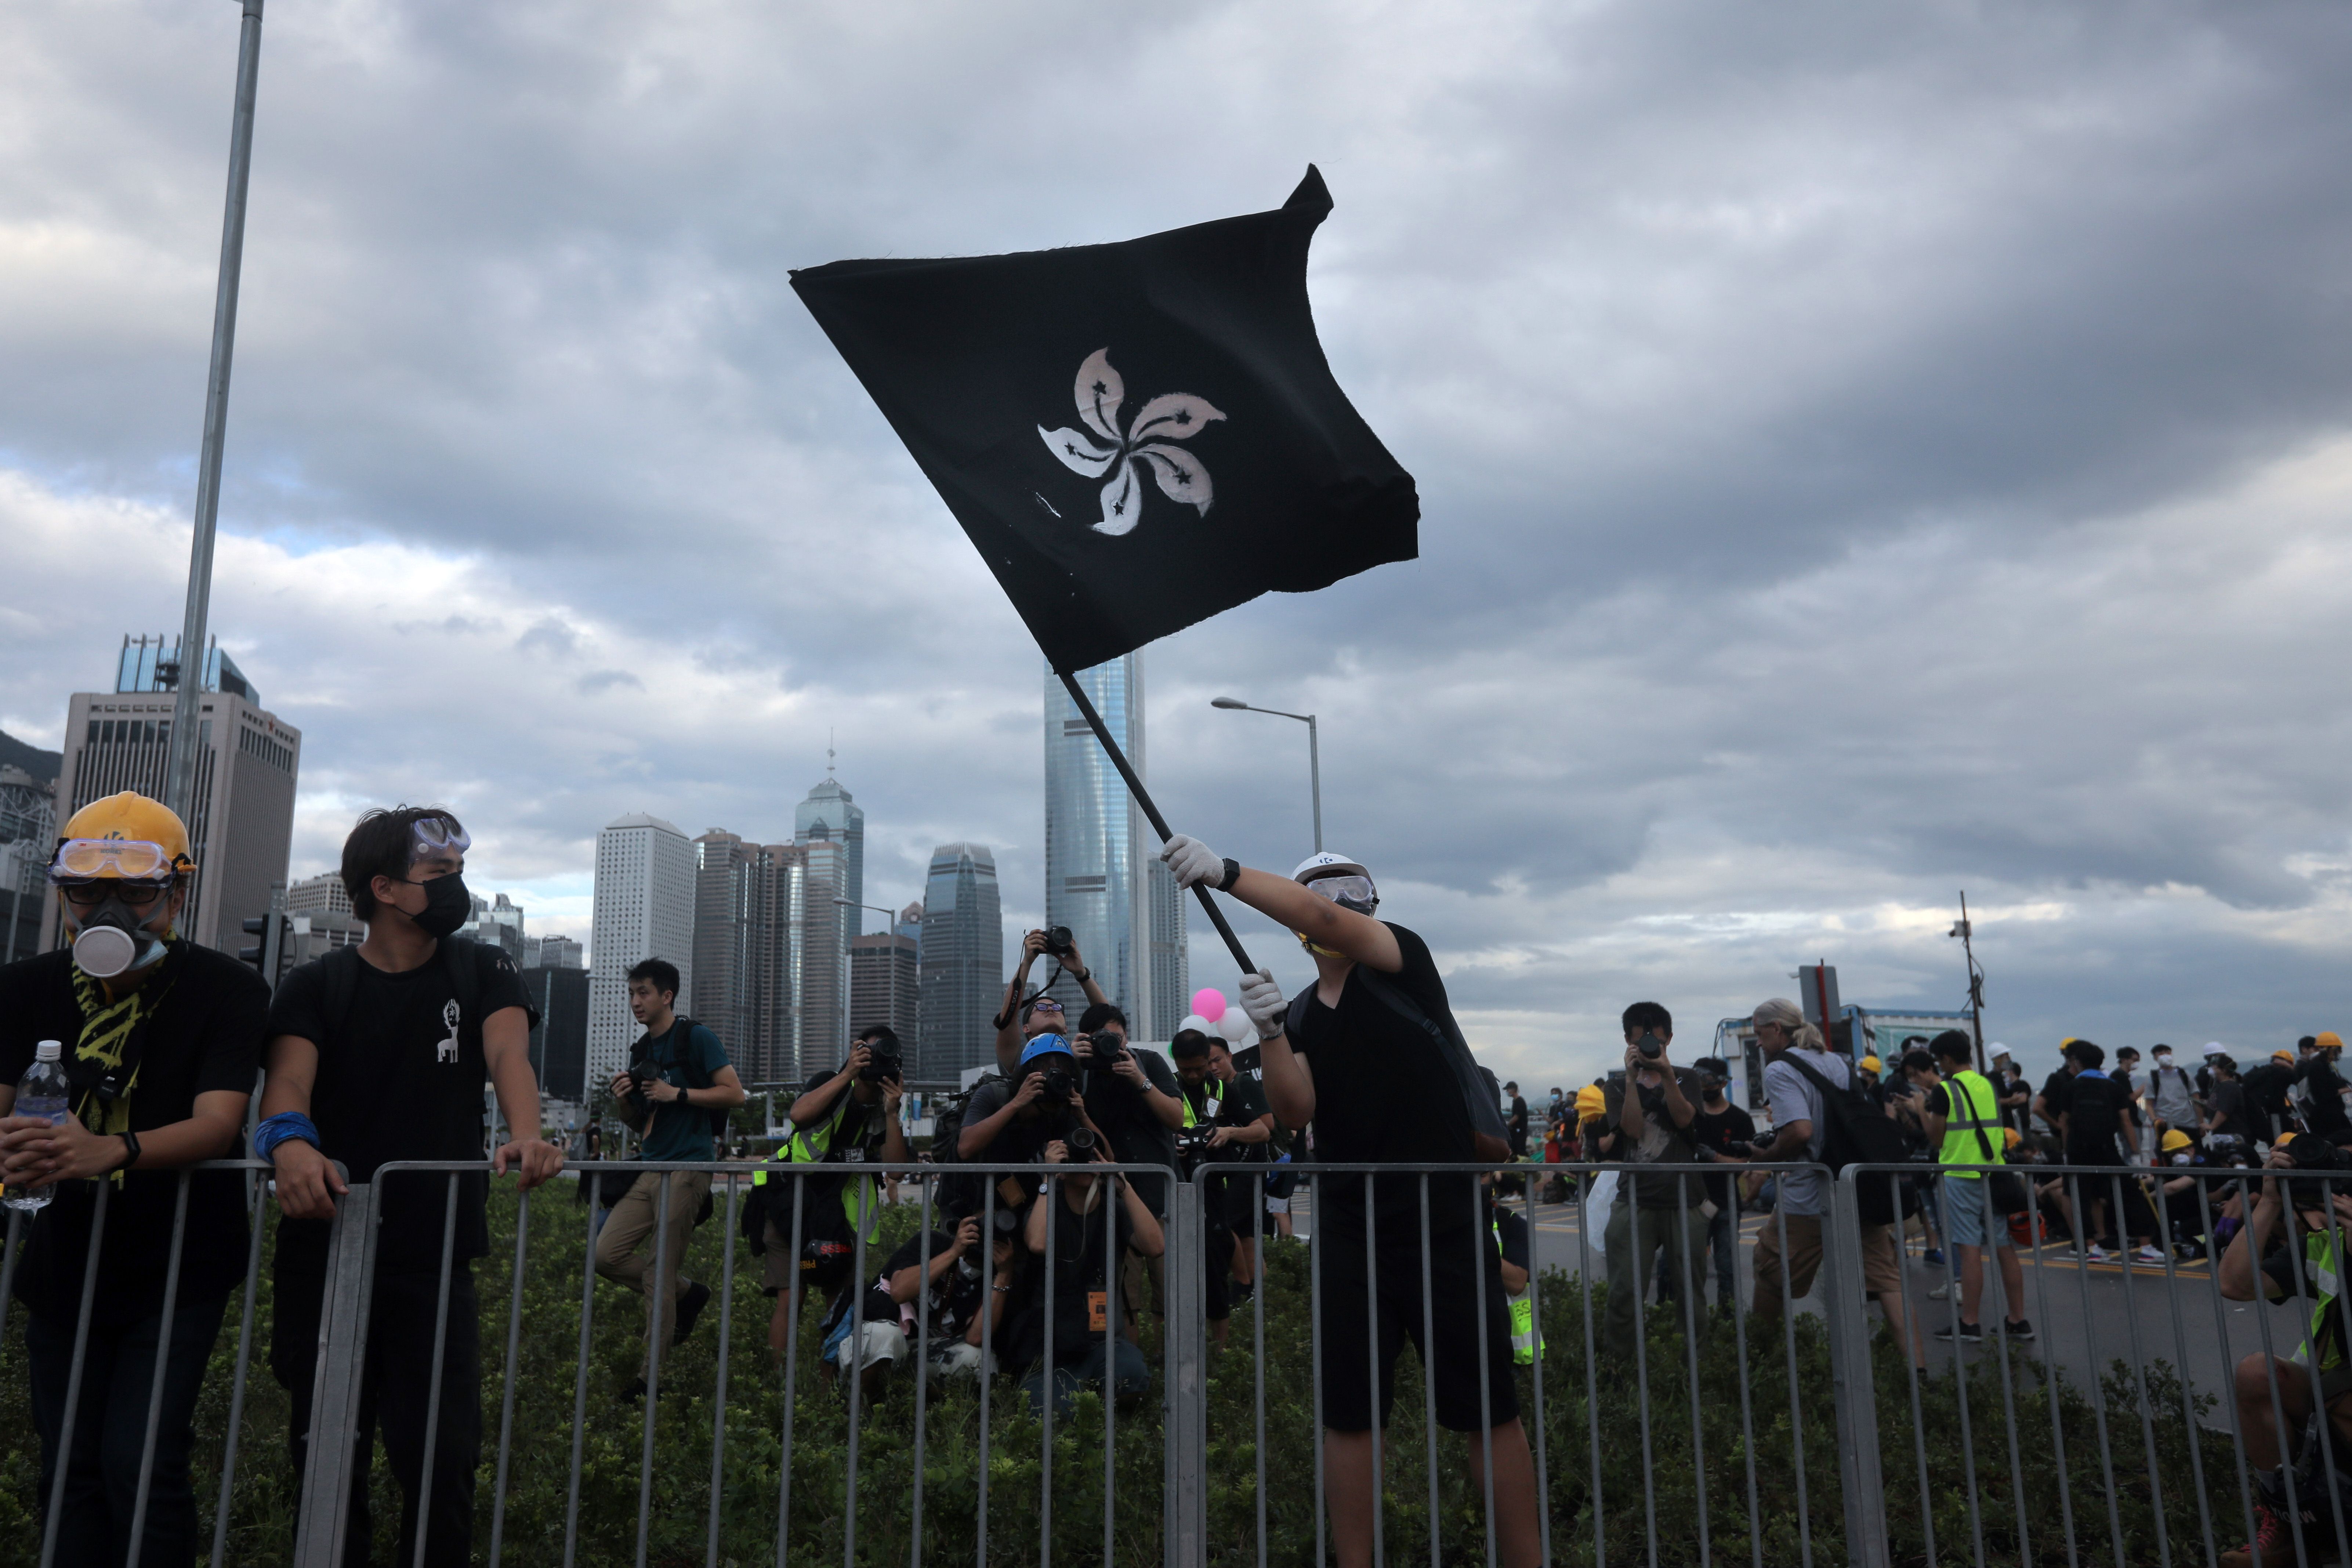 A protester waves a "black bauhinia" flag outside Hong Kong's Legislative Council.